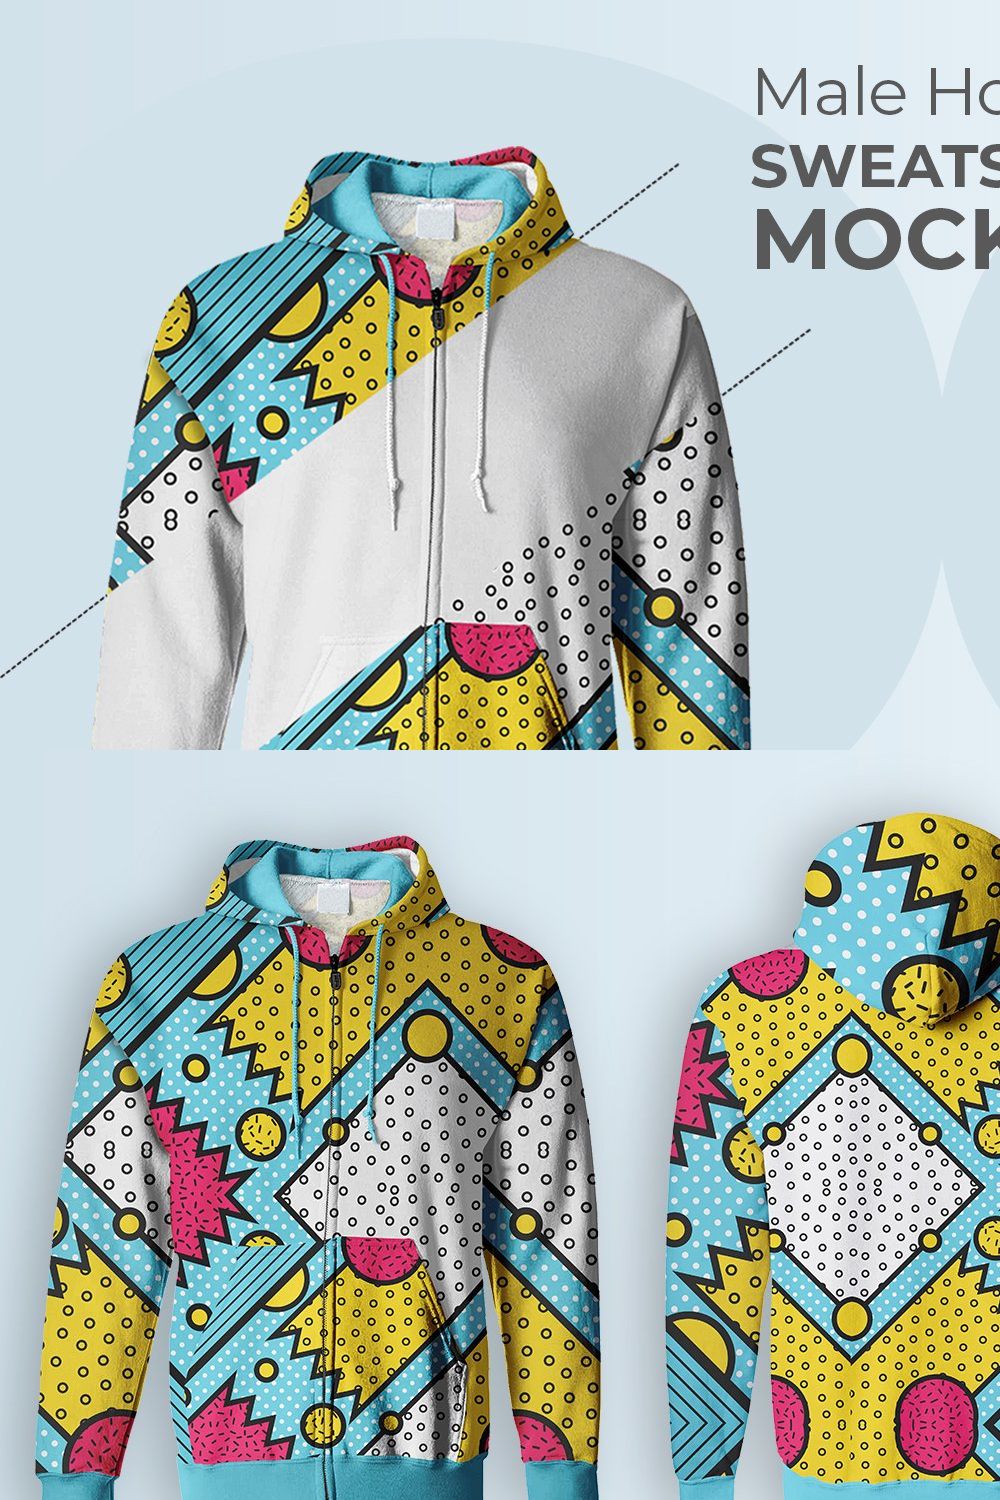 Male Hoodie Sweatshirt Mockup pinterest preview image.